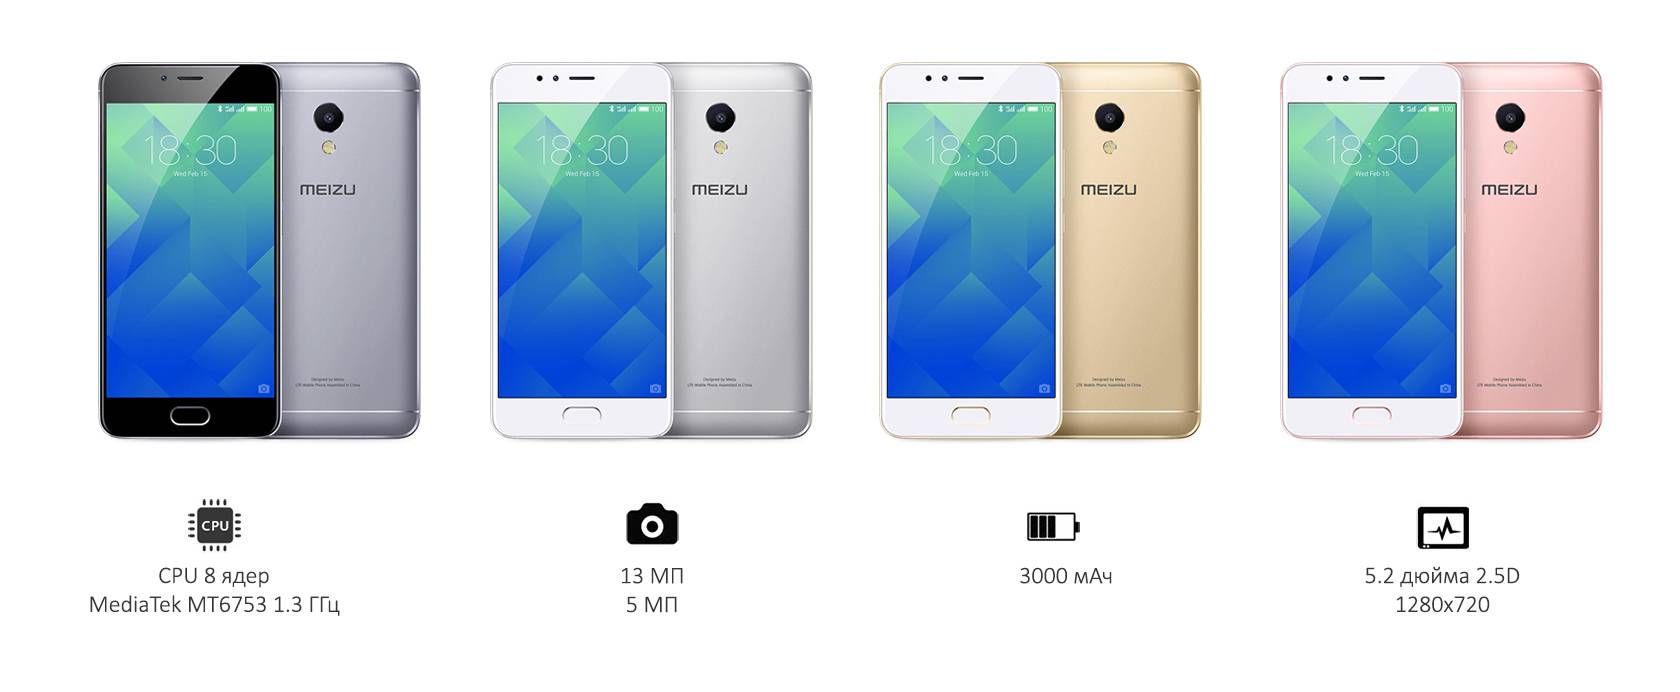 Сравнение meizu m5s и meizu m5 - какой смартфон лучше - galagram.com